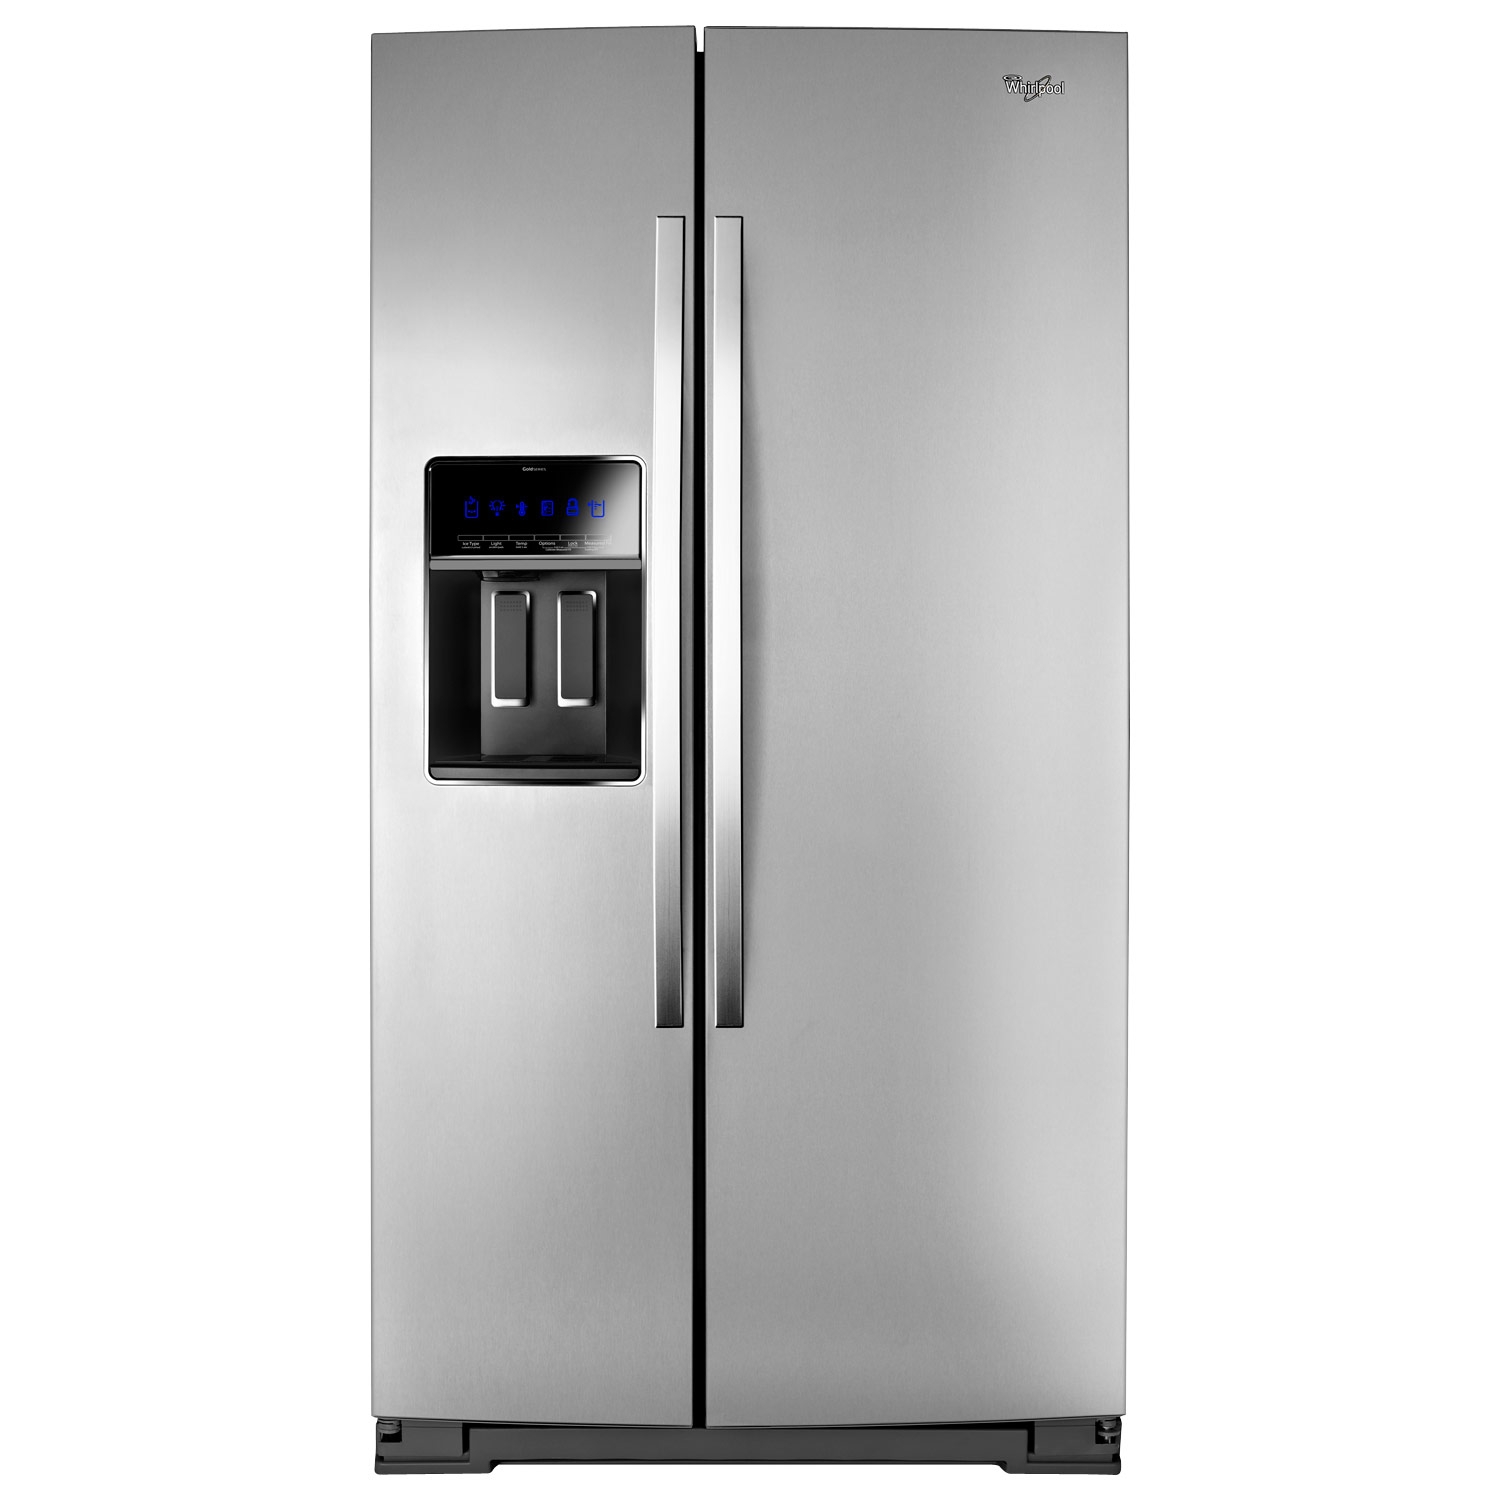 Comprar Whirlpool Refrigerador WRS970CIDM